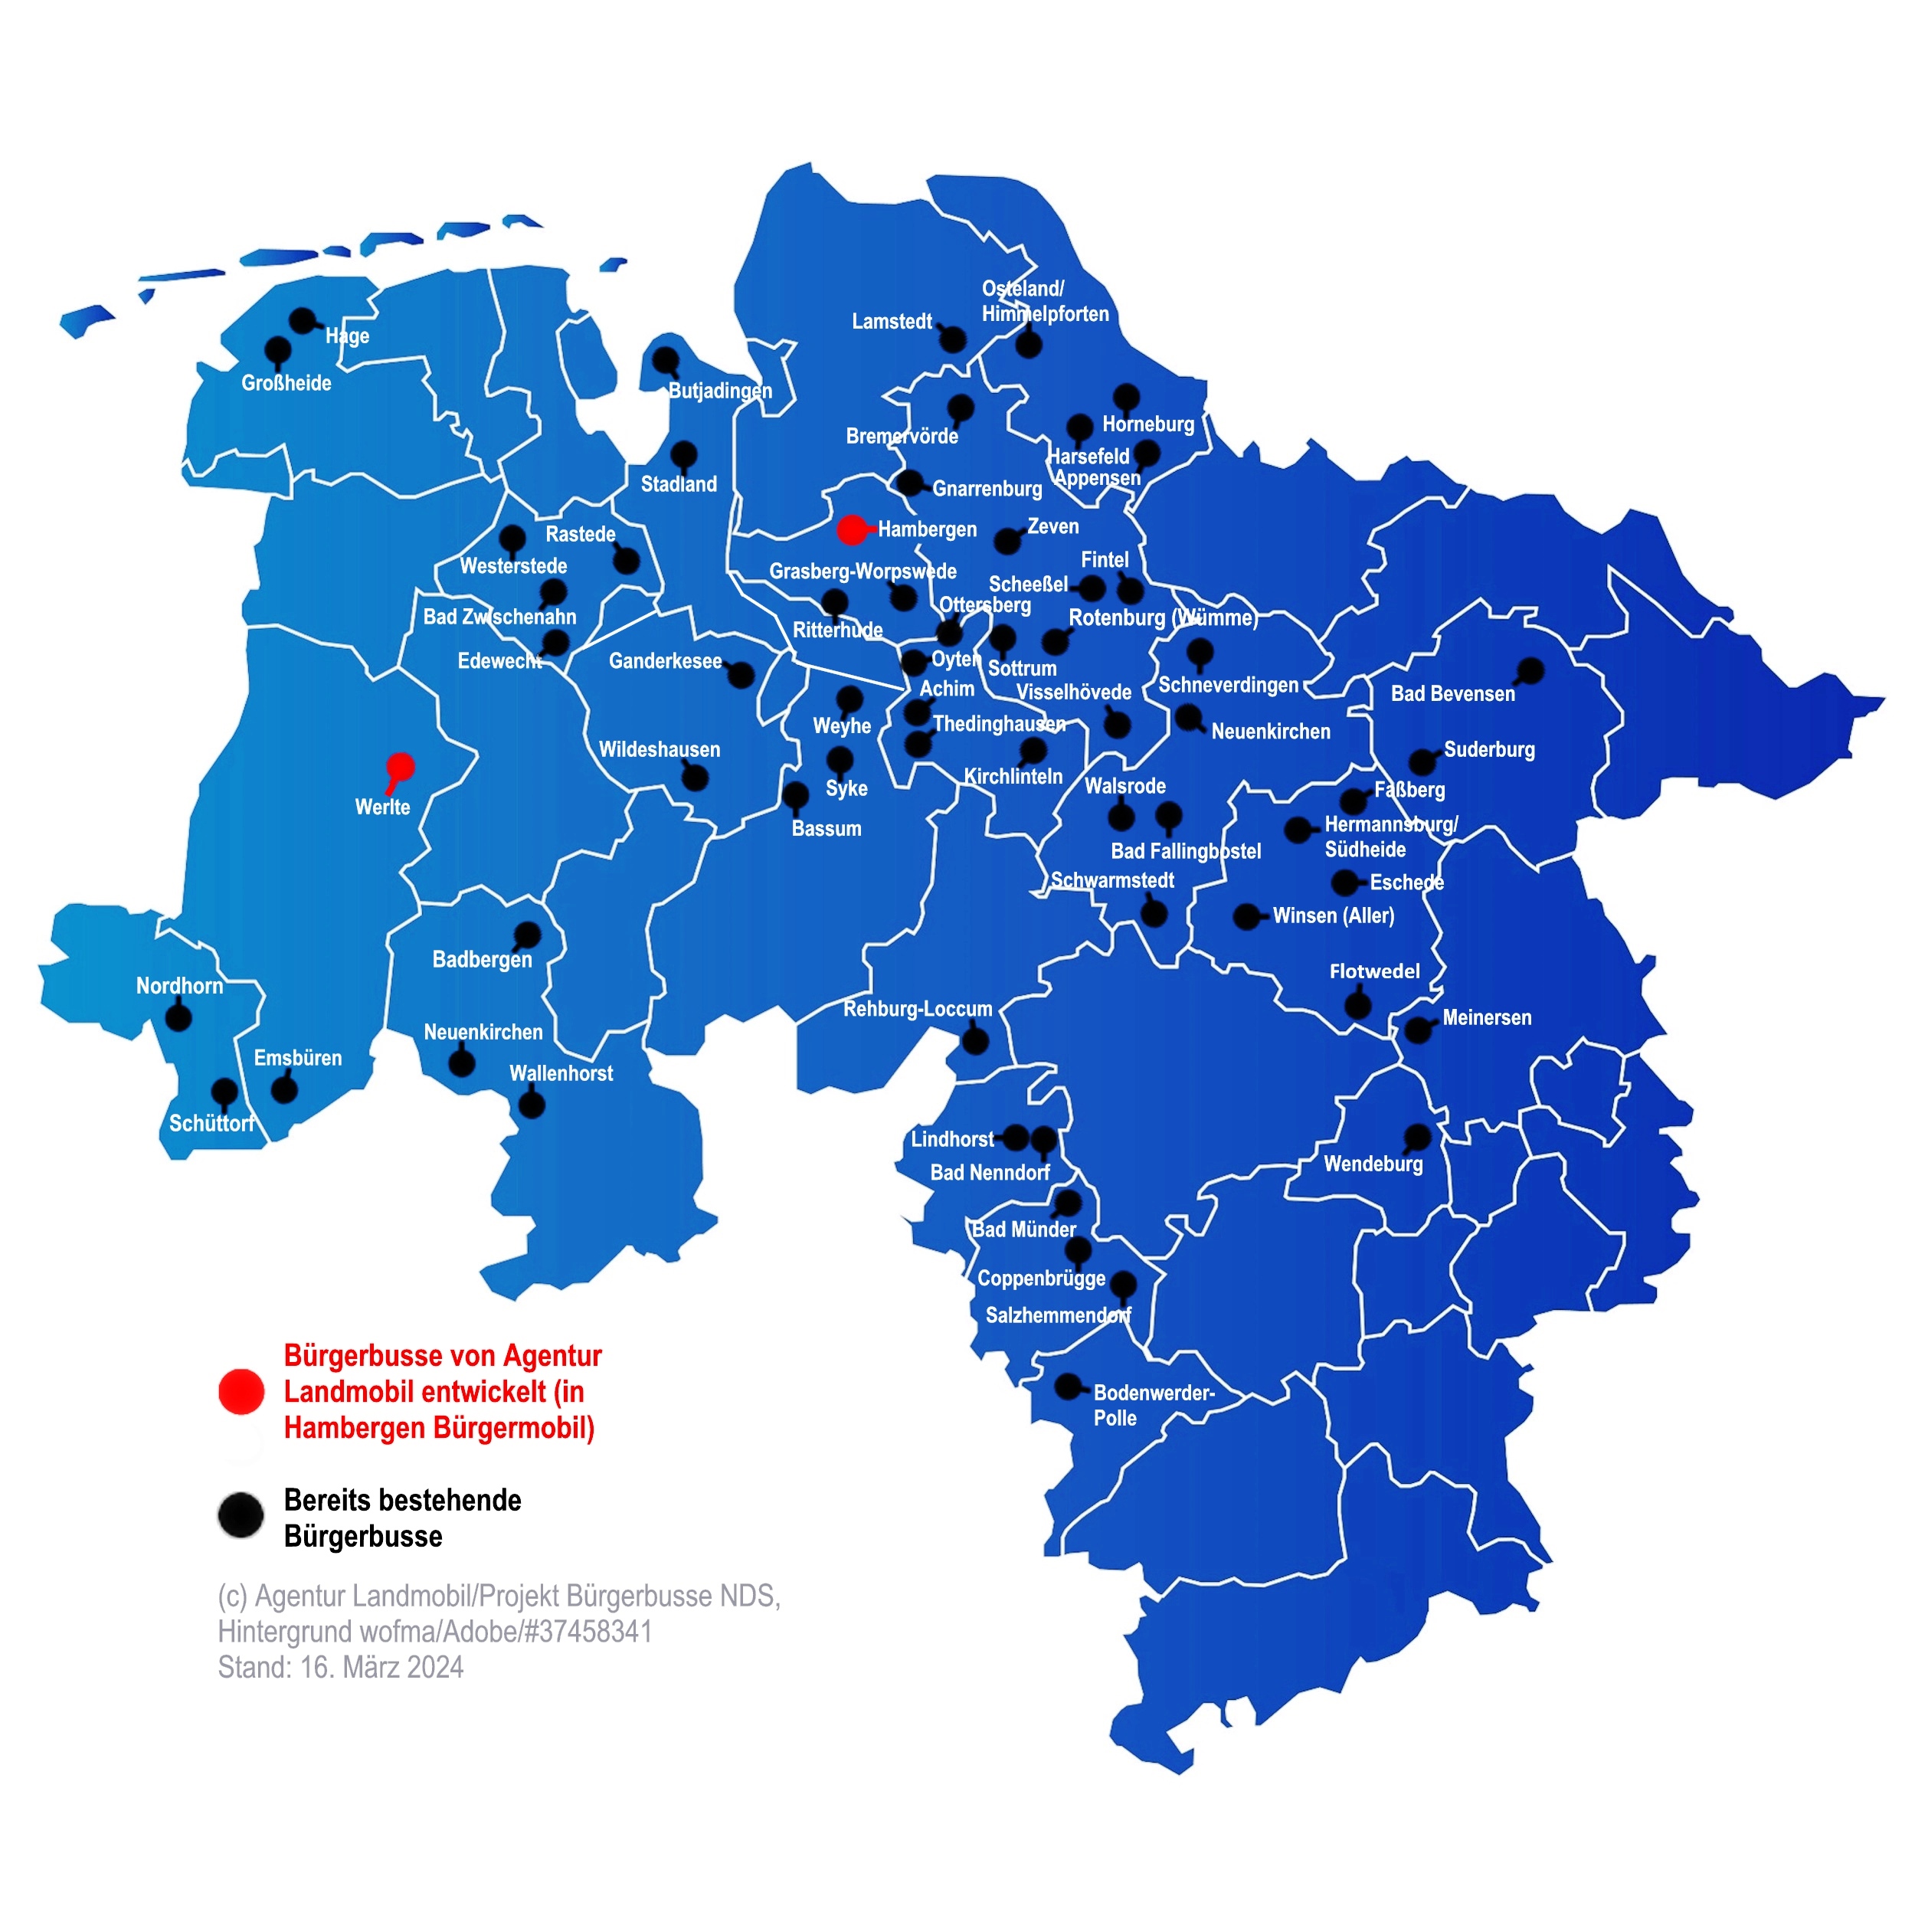 In Niedersachsen fahren derzeit etwa 60 Bürgerbusse. Der Bürgerbus in der Samtgemeinde Hambergen (roter Punkt) wird derzeit von der Agentur Landmobil entwickelt.